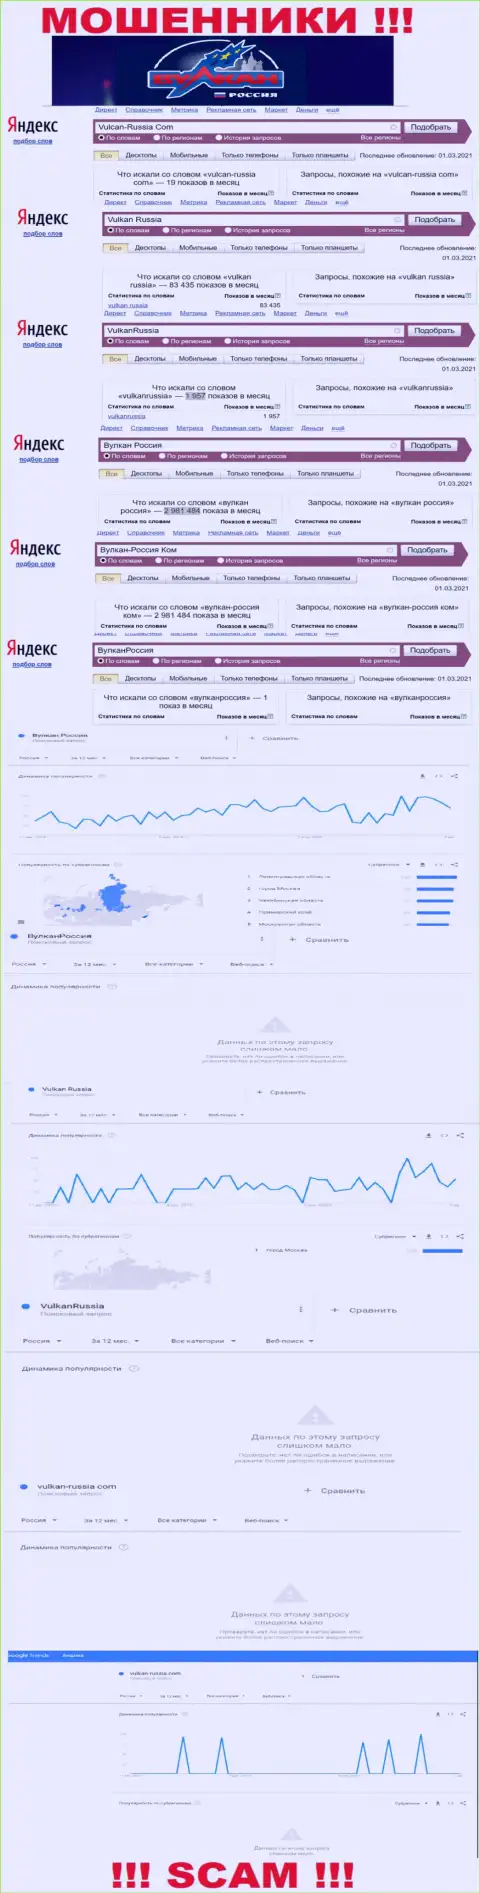 Статистические показатели количества обзоров данных о мошенниках Vulkan Russia в глобальной сети internet